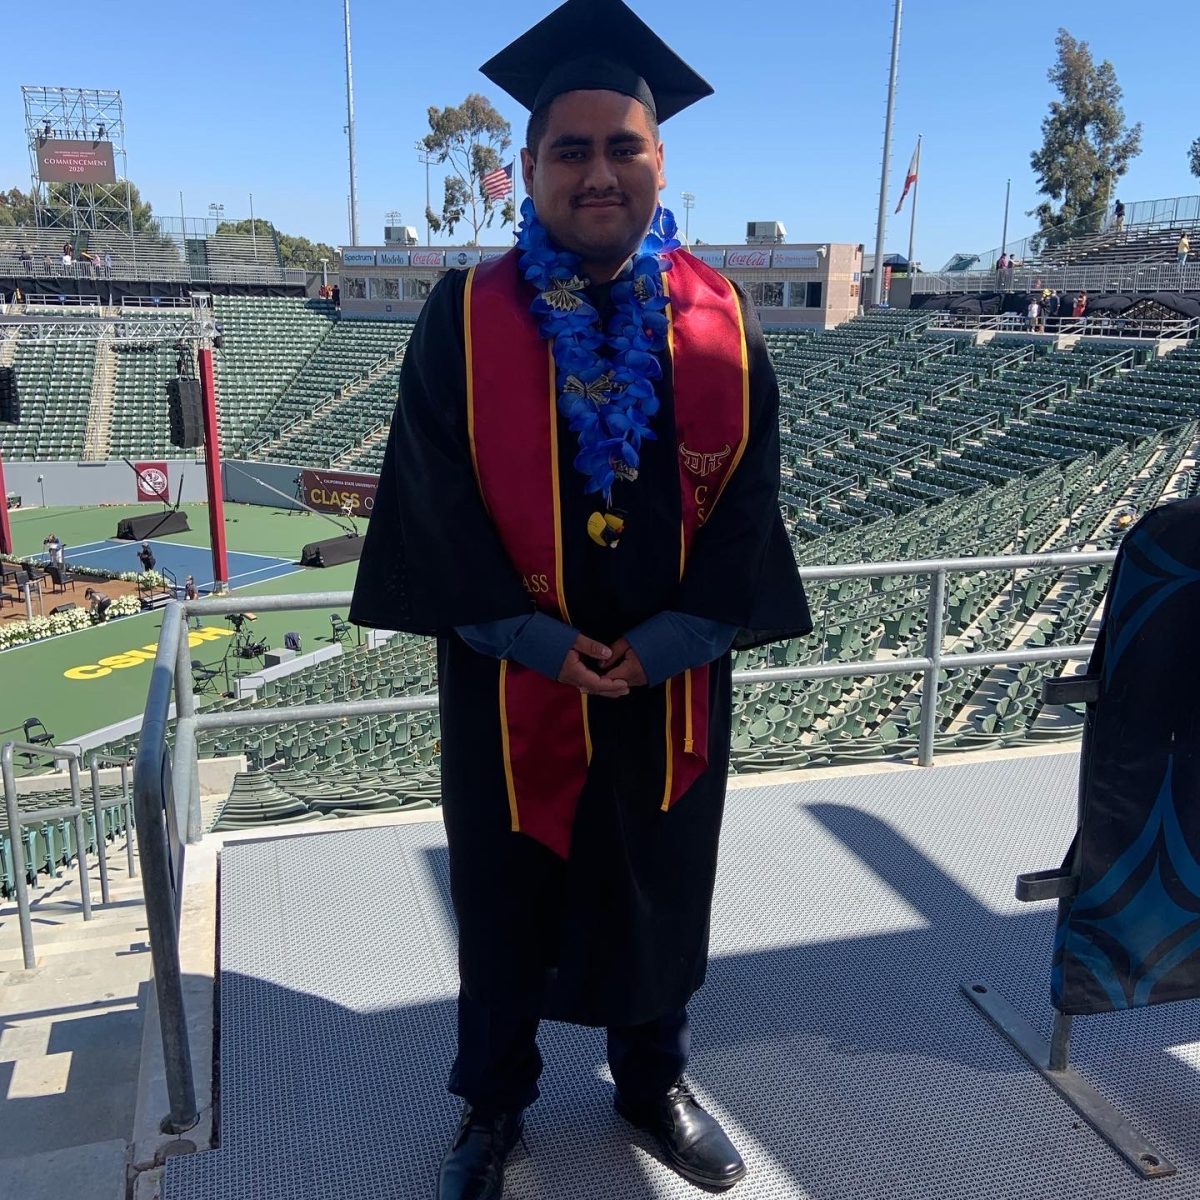 Mr. Diaz at his graduation.